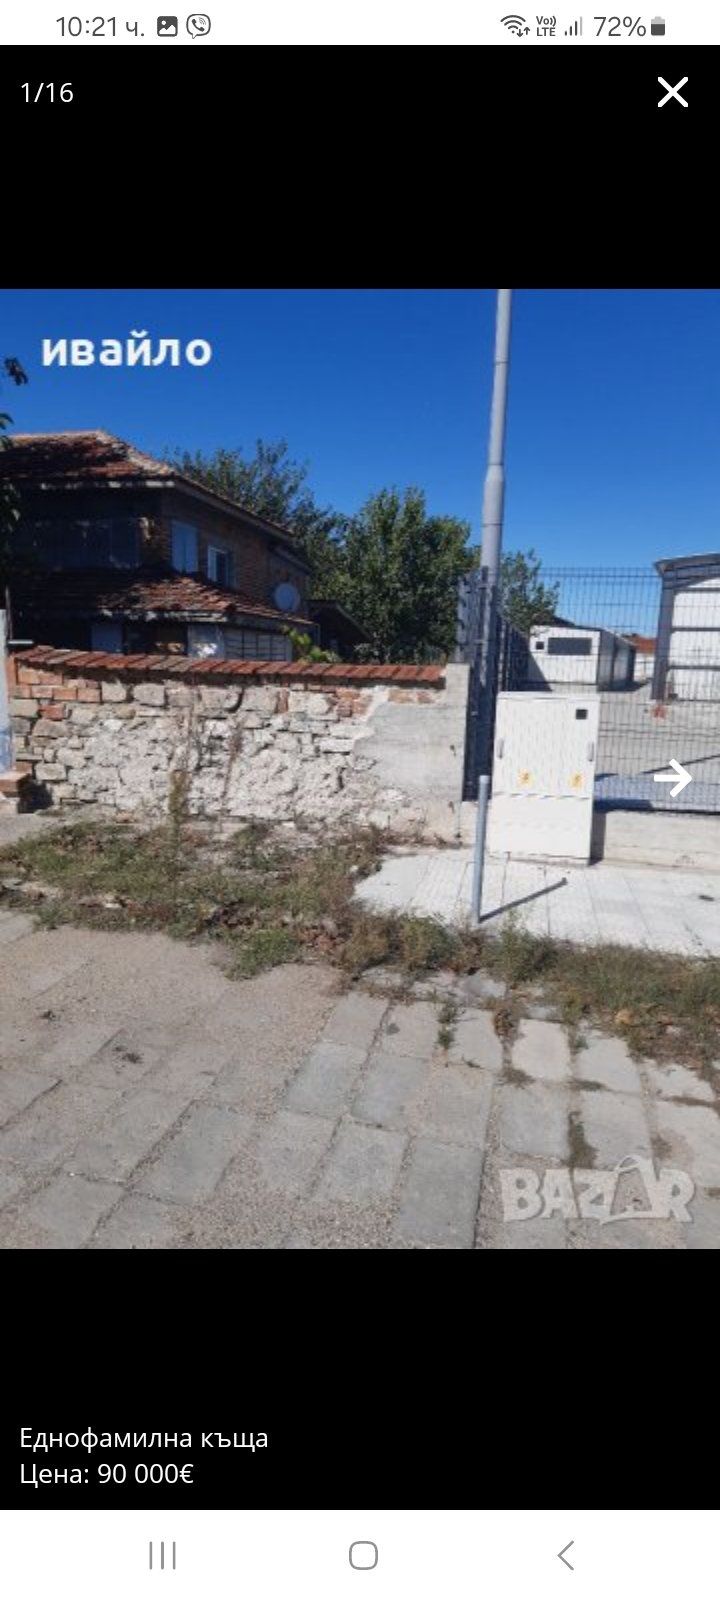 Къща село Калековец 10 км от Пловдив .95000 евро